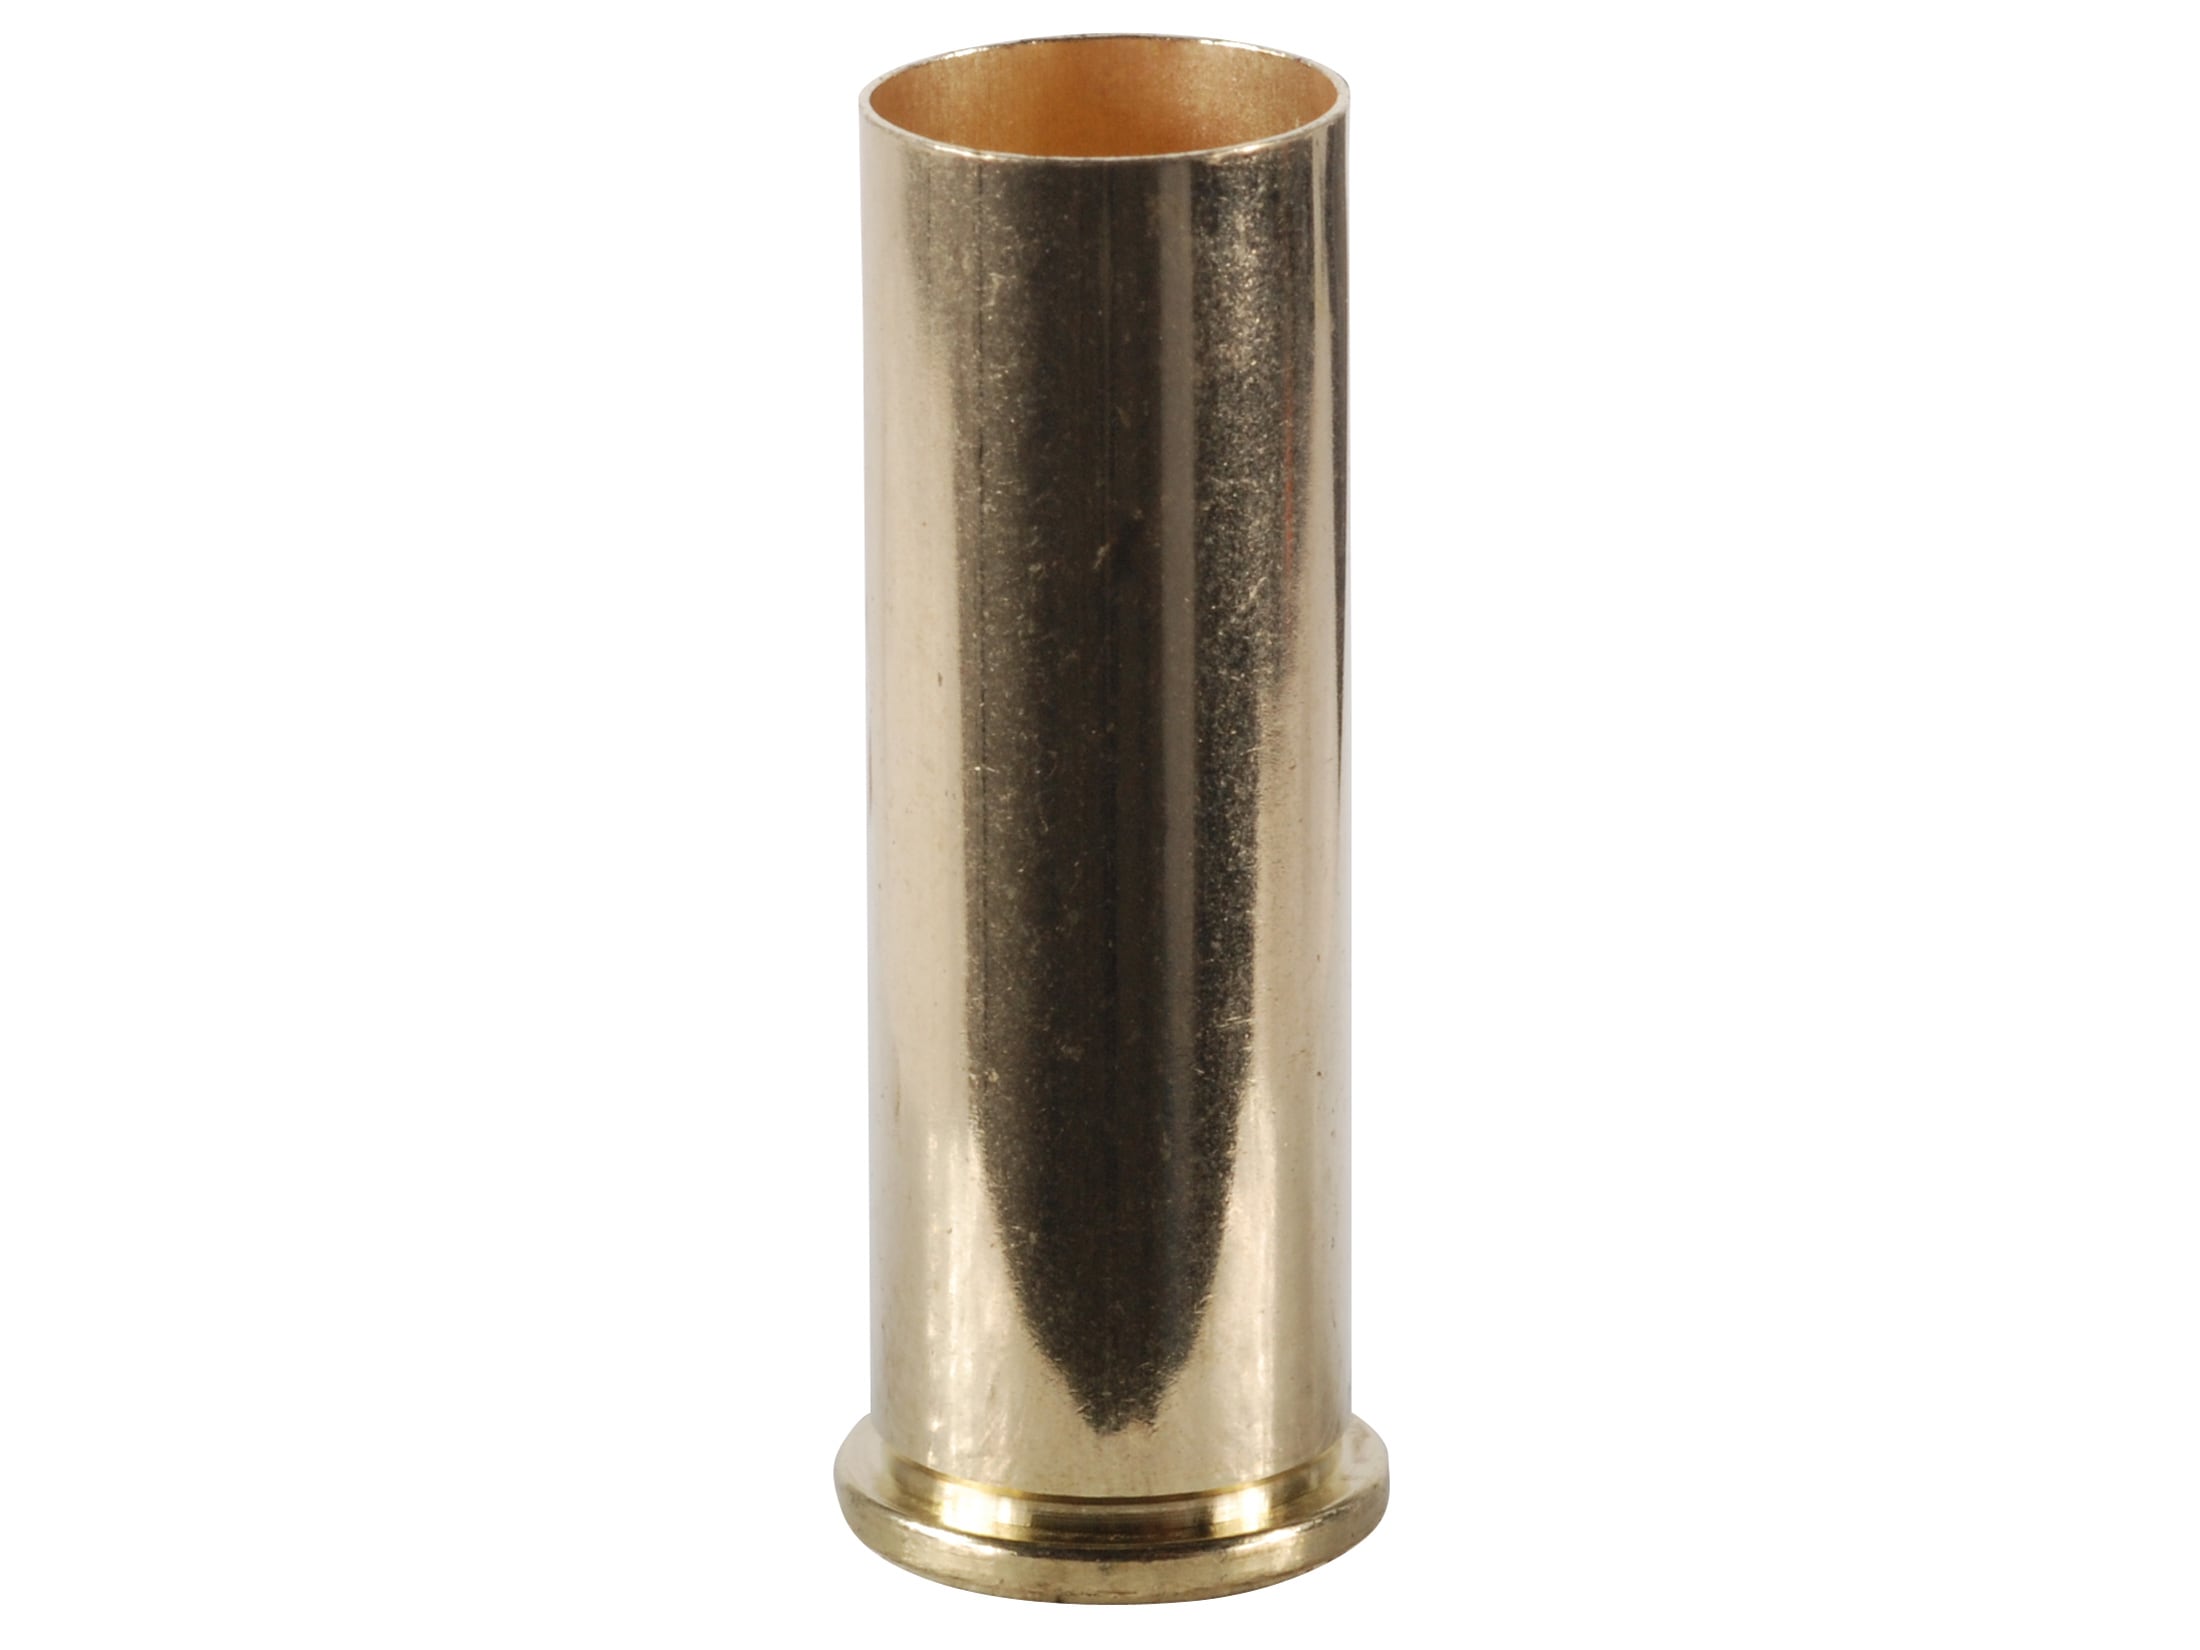 38 Super +P brass (Winchester, QTY 100)